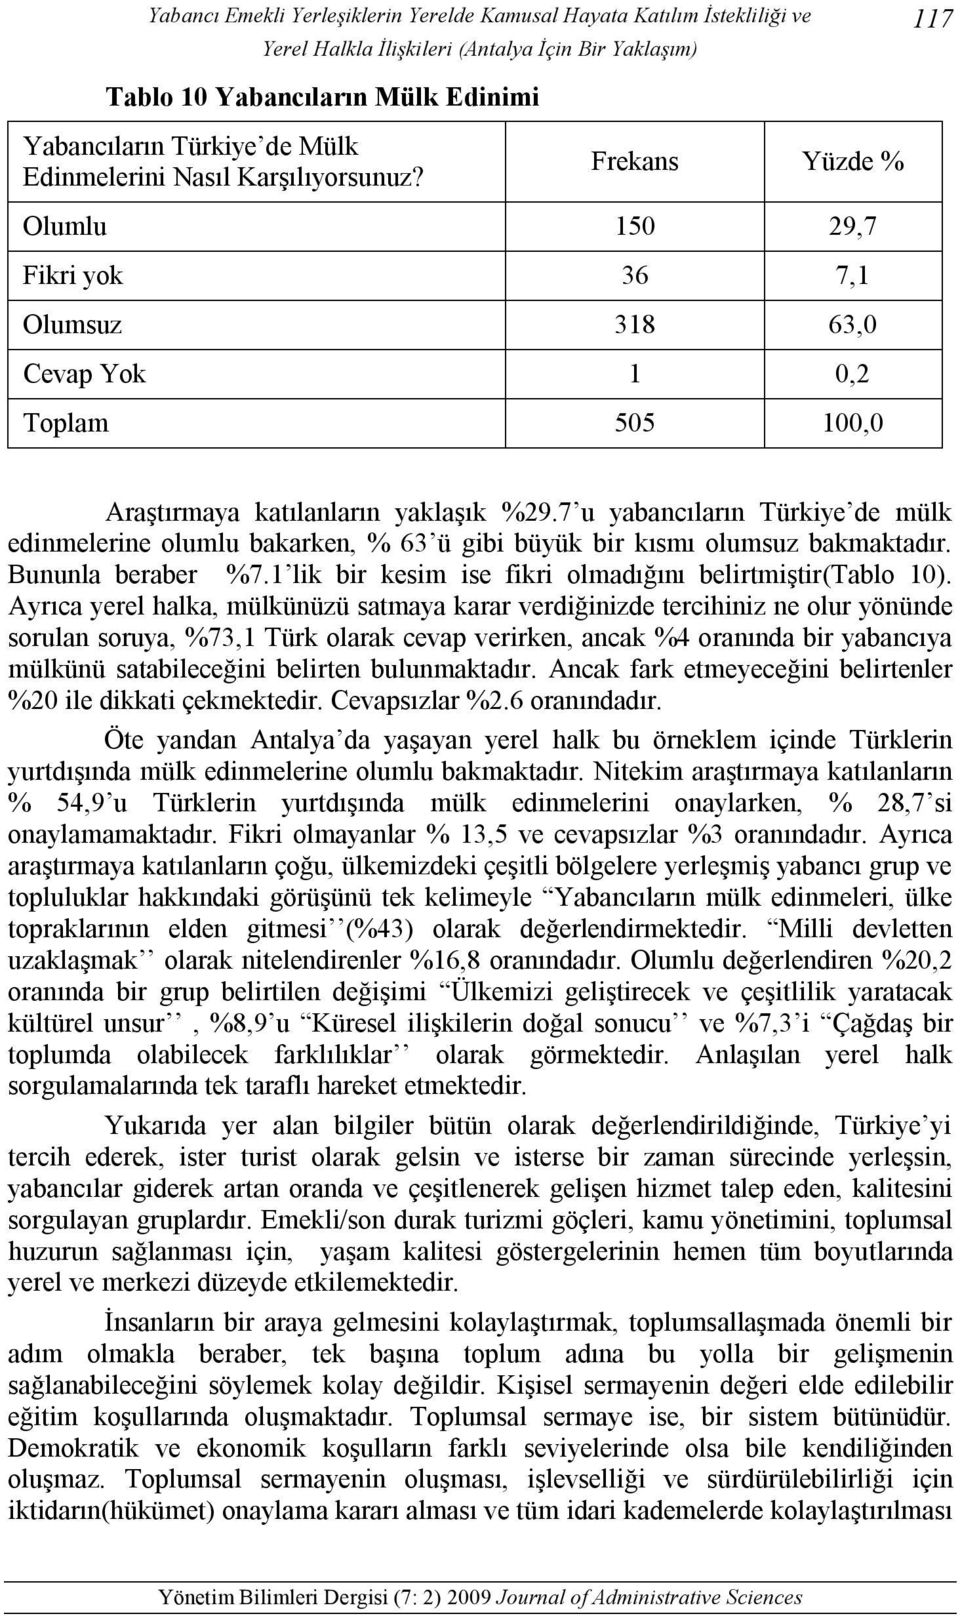 7 u yabancıların Türkiye de mülk edinmelerine olumlu bakarken, % 63 ü gibi büyük bir kısmı olumsuz bakmaktadır. Bununla beraber %7.1 lik bir kesim ise fikri olmadığını belirtmiştir(tablo 10).